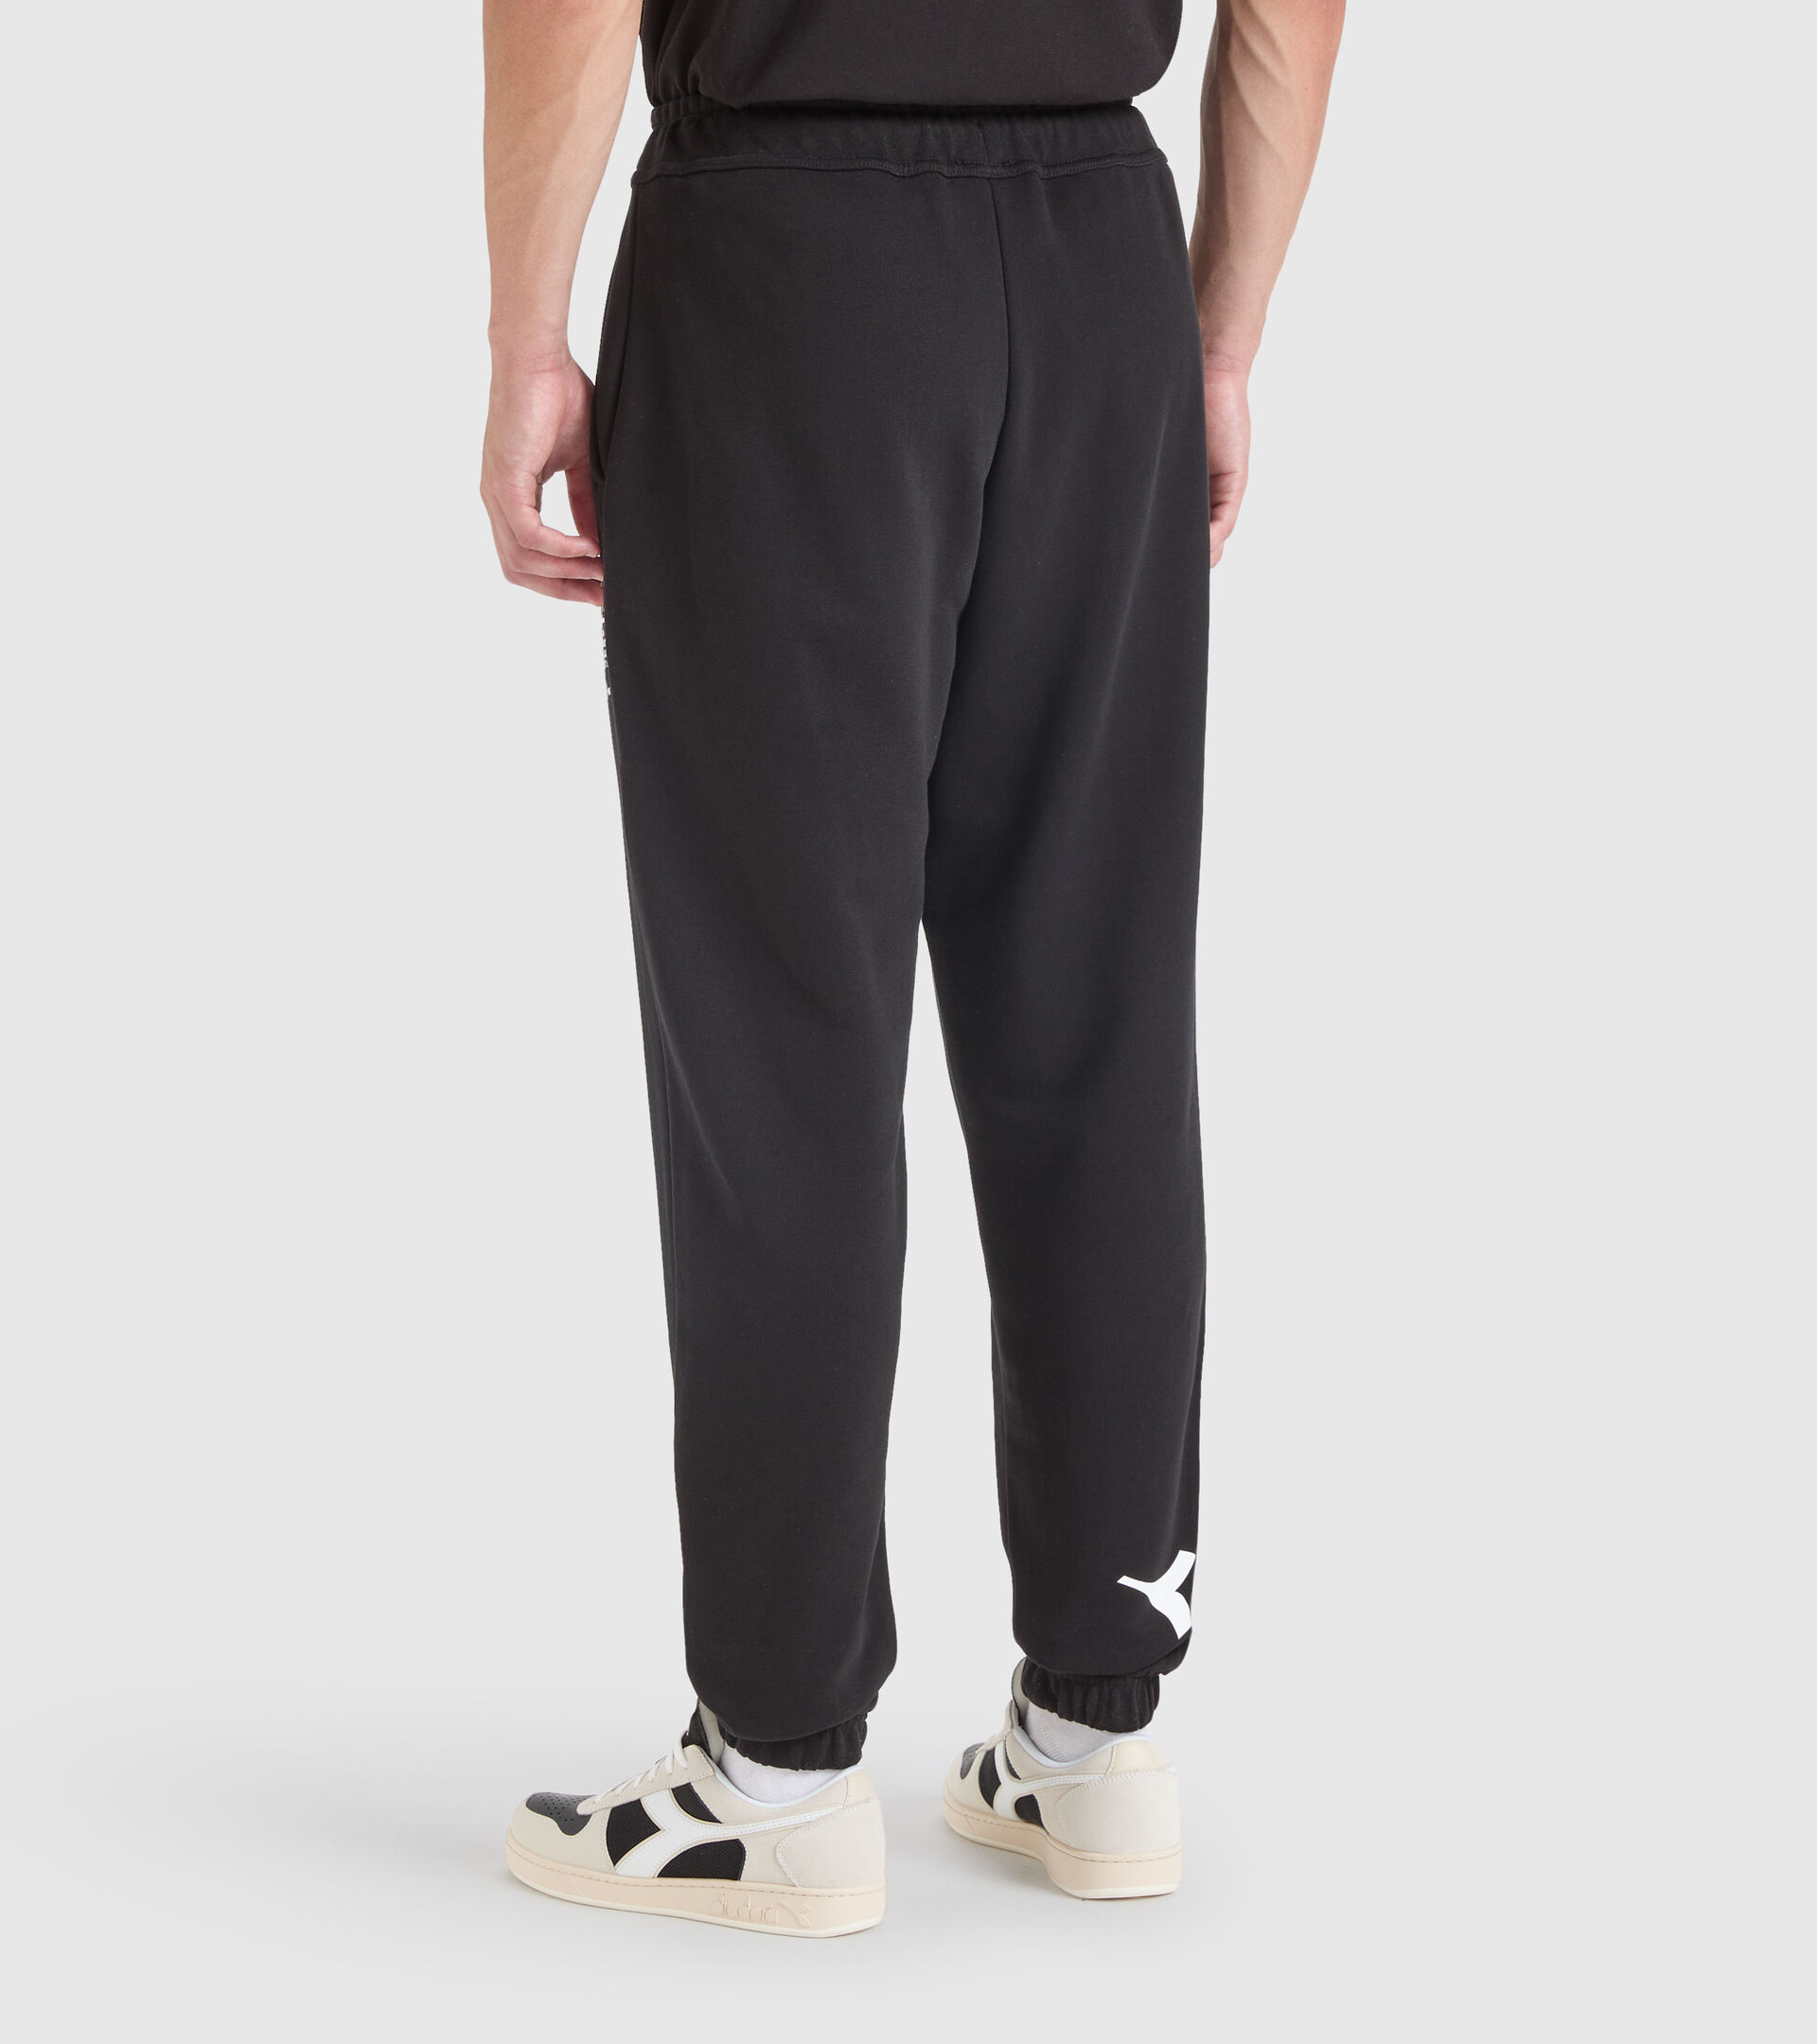 Cotton sports trousers - Unisex PANT MANIFESTO BLACK - Diadora